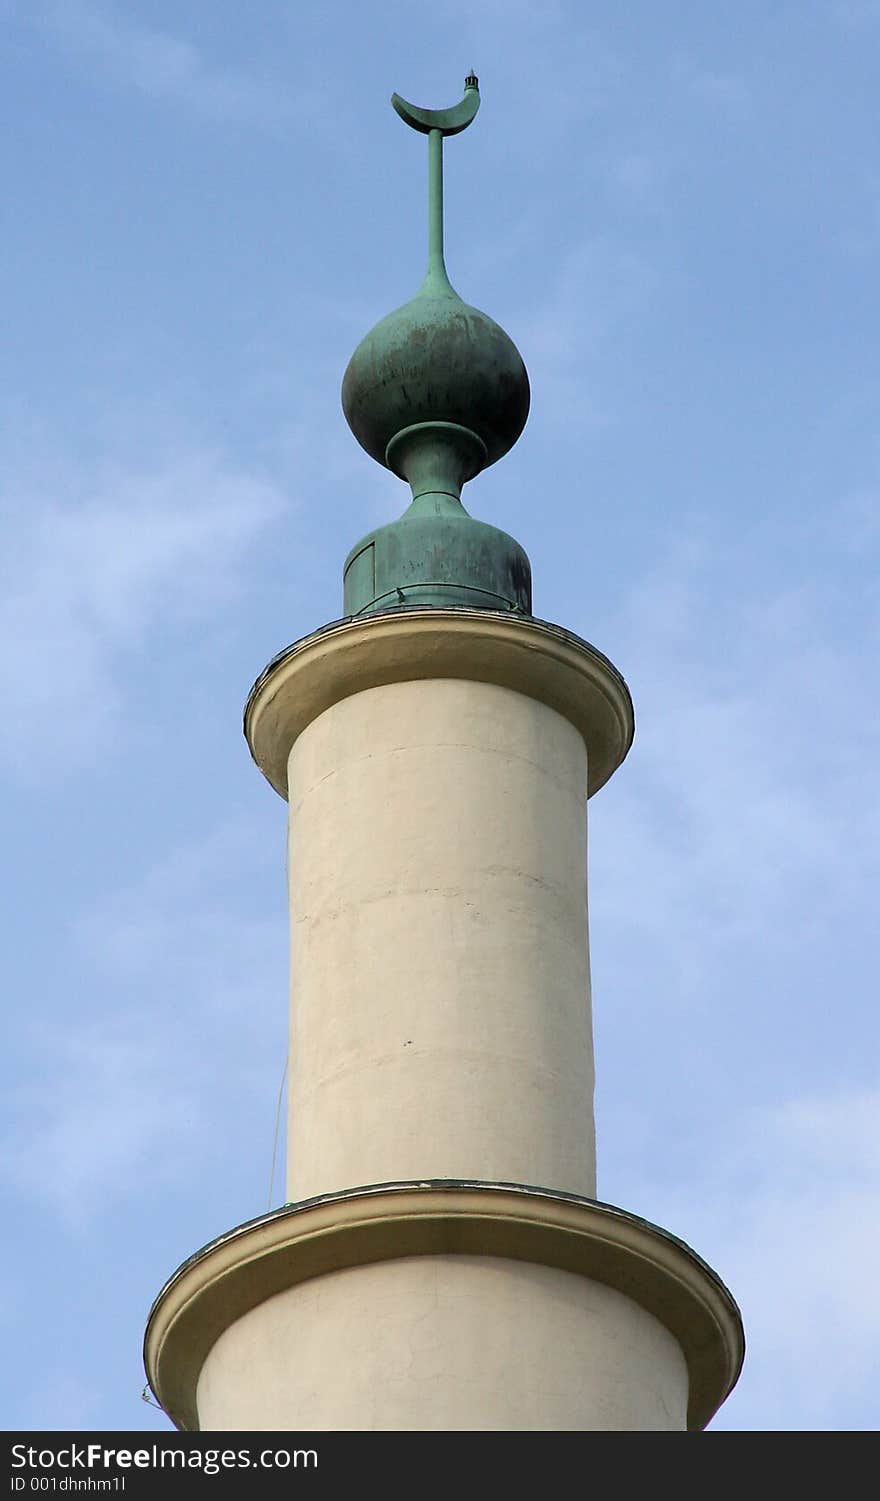 A minaret of a mosque